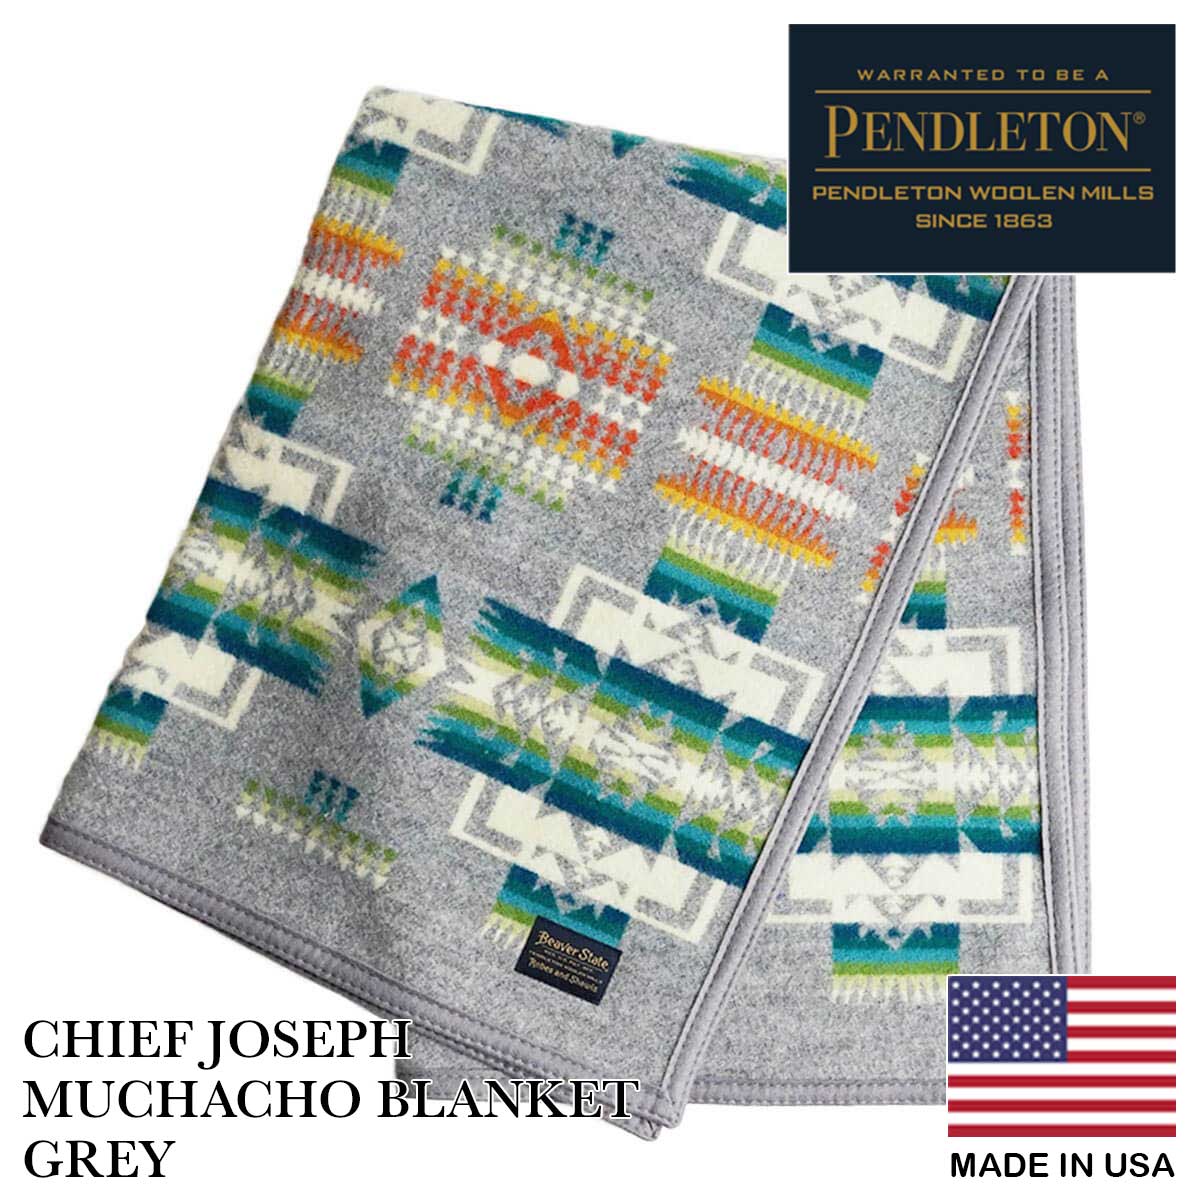 ペンドルトン PENDLETON チーフジョセフ ムチャチョ ブランケット CHIEF JOSEPH MUCHACHO BLANKET ウール 膝掛け  毛布 アメリカ製 米国製